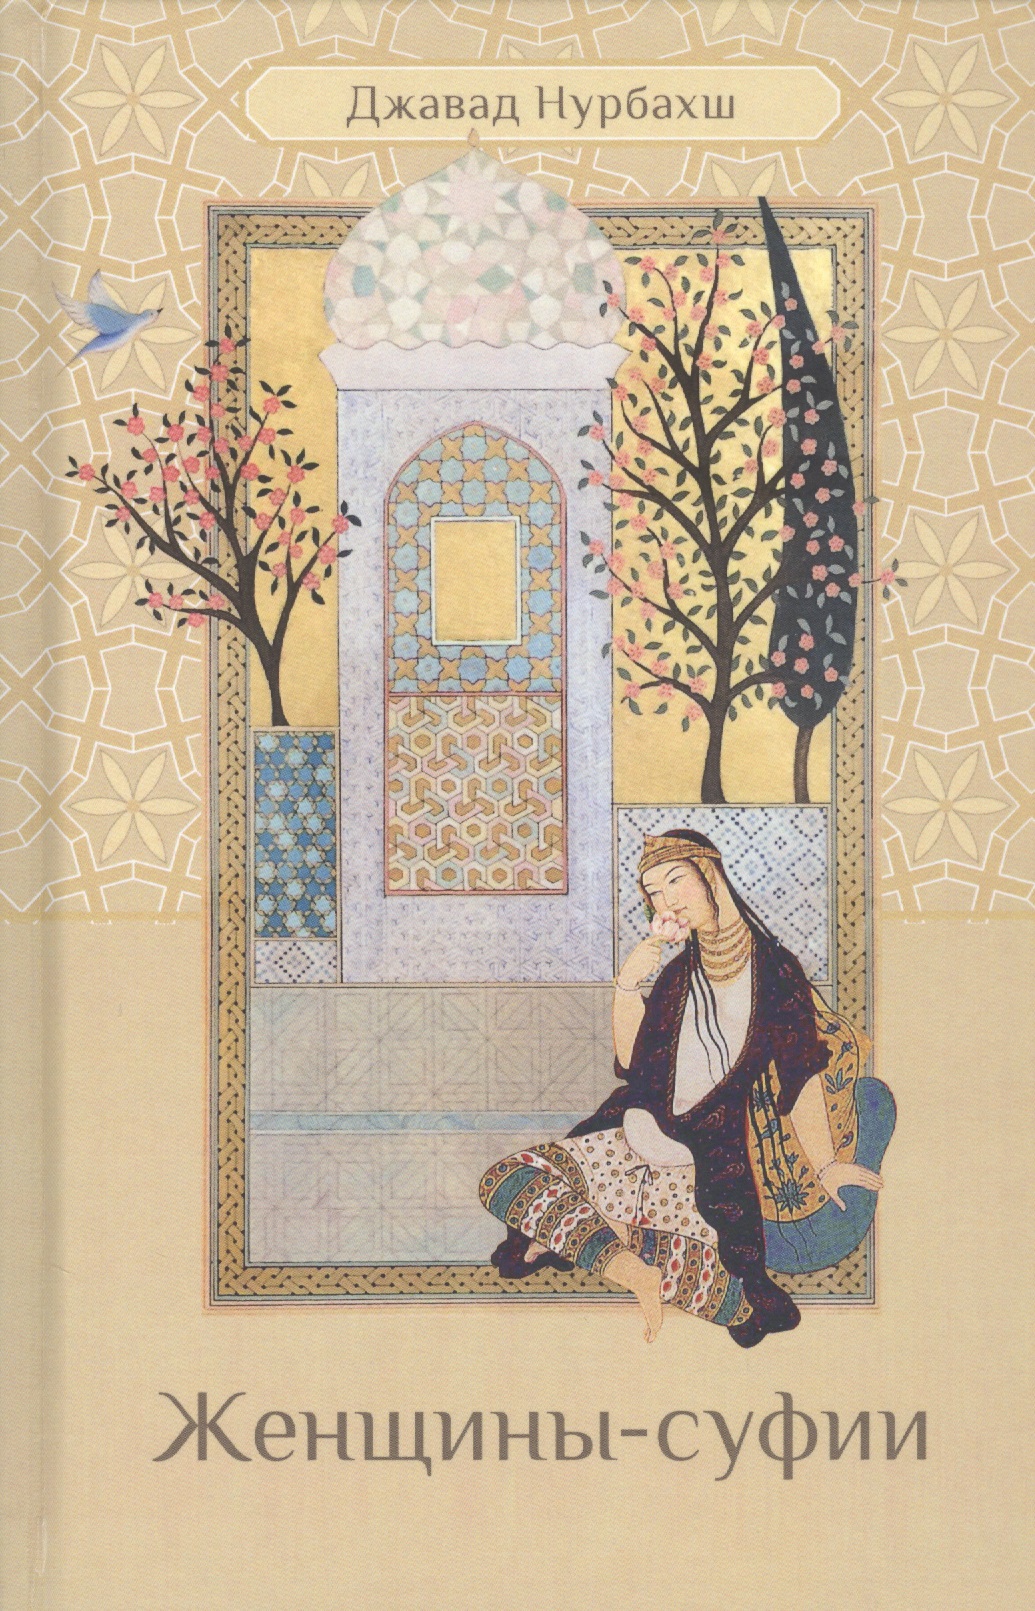 нурбахш джавад путь духовная практика суфизма Женщины-суфии